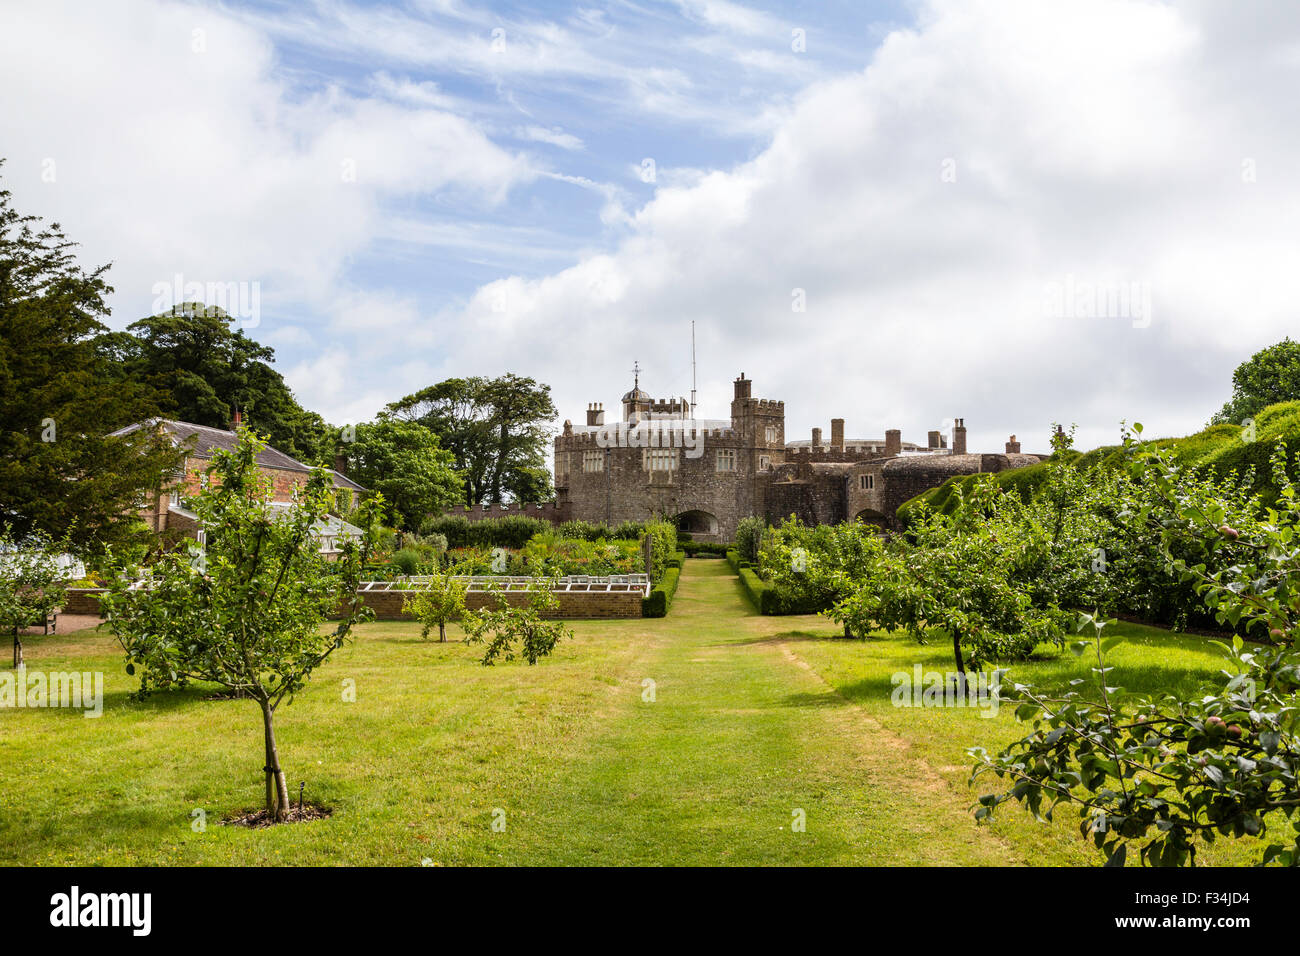 Tudor Walmer Castle construido en 1540 con el jardín y huerto en el de primer plano. Blanco y azul cielo nublado sobrecarga. Amplio ángulo de disparo. Foto de stock